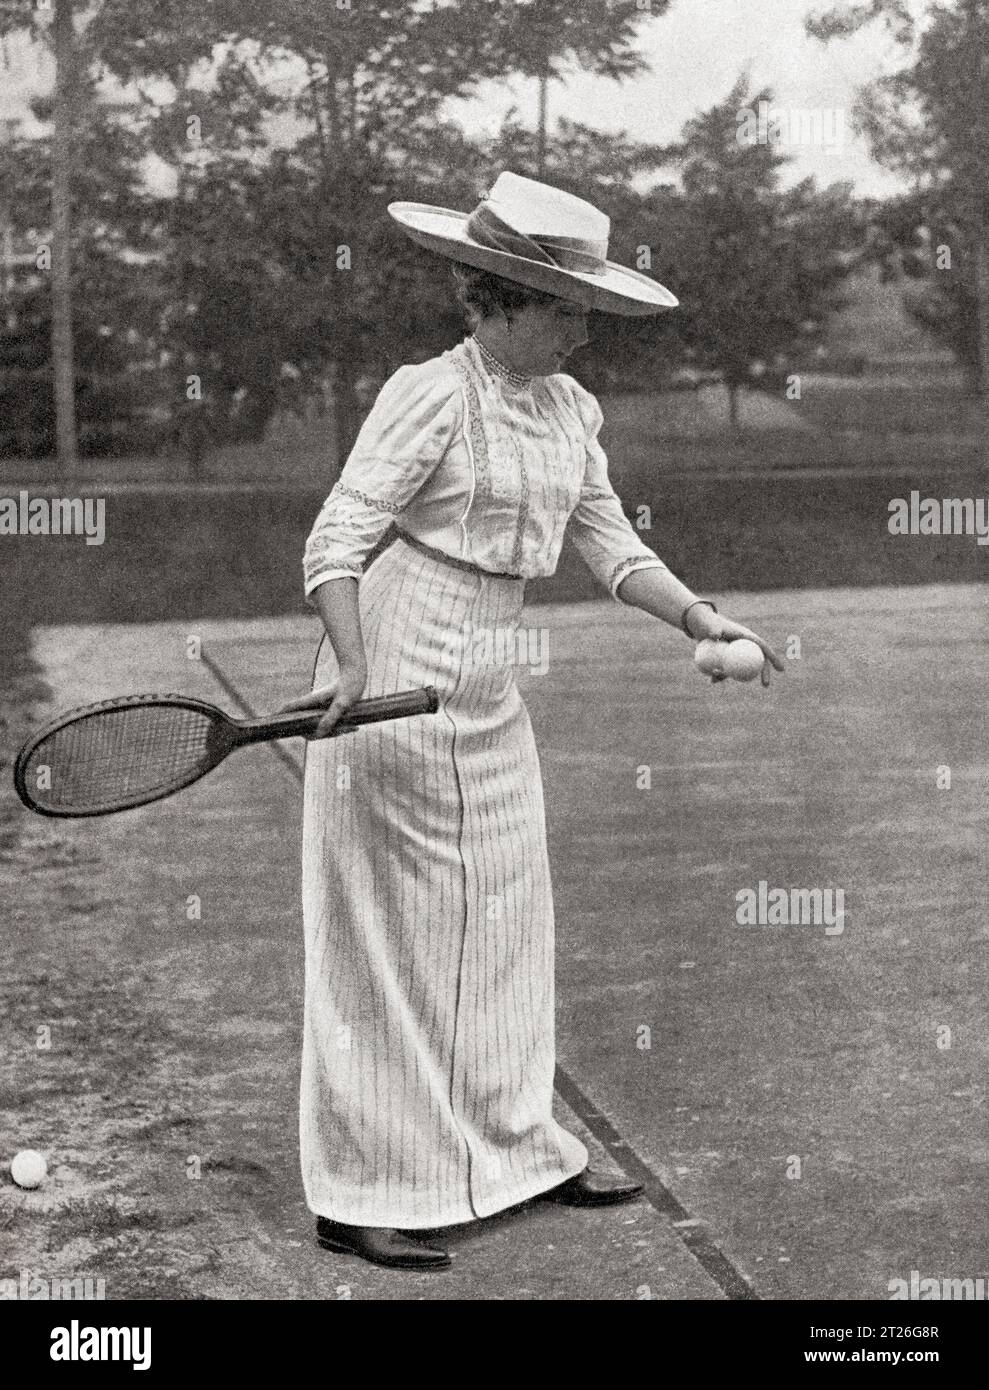 Regina Vittoria di Spagna, vista qui giocare a tennis al Palacio de Las Fraguas. Vittoria Eugenia di Battenberg, 1887–1969. Regina di Spagna come moglie di re Alfonso XIII Da Mundo grafico, pubblicato nel 1912. Foto Stock